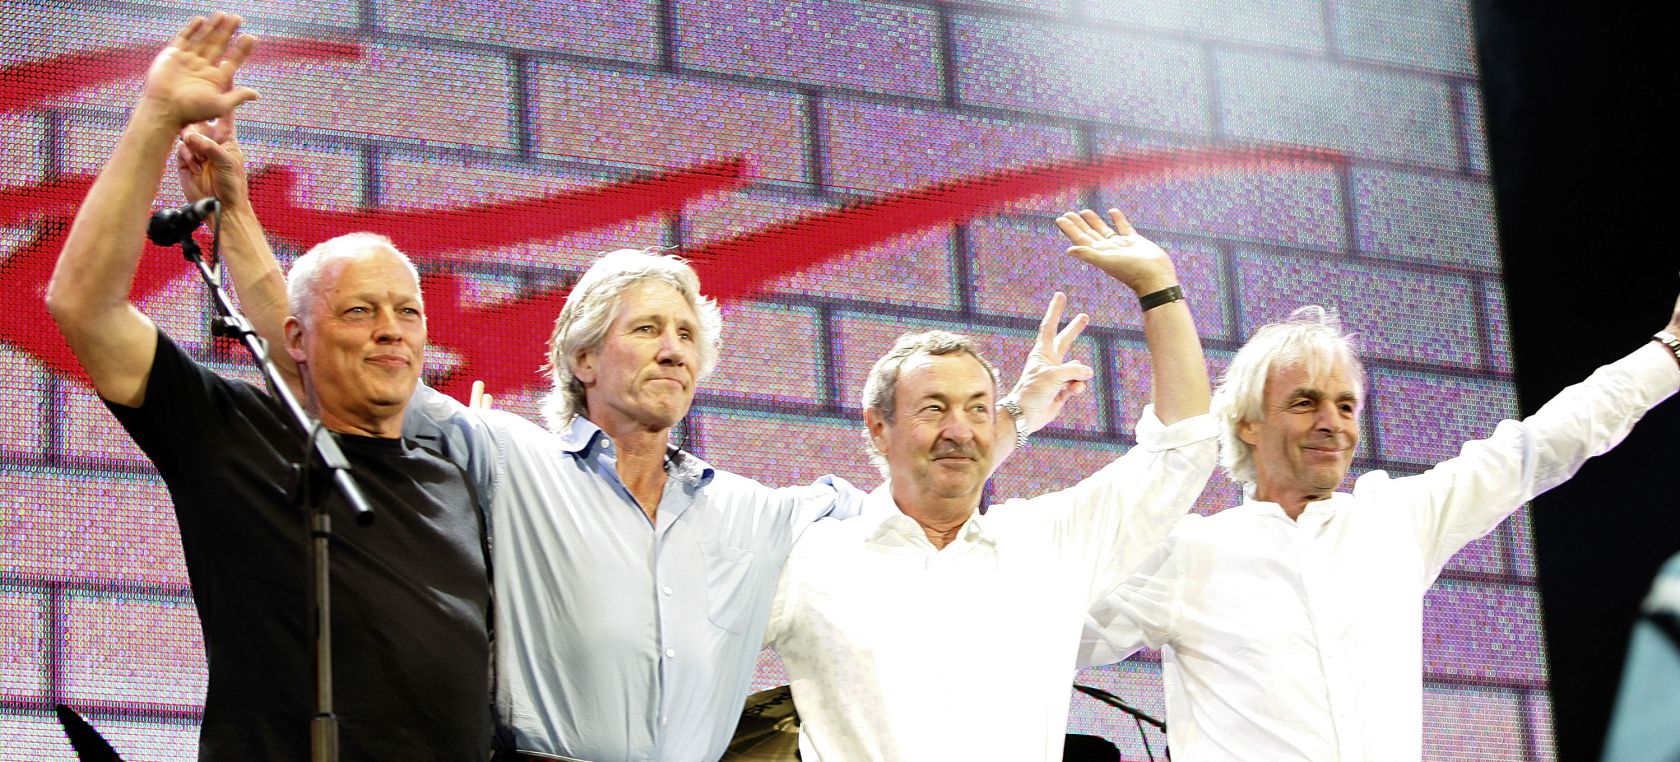 Pink Floyd quiere vender su catálogo